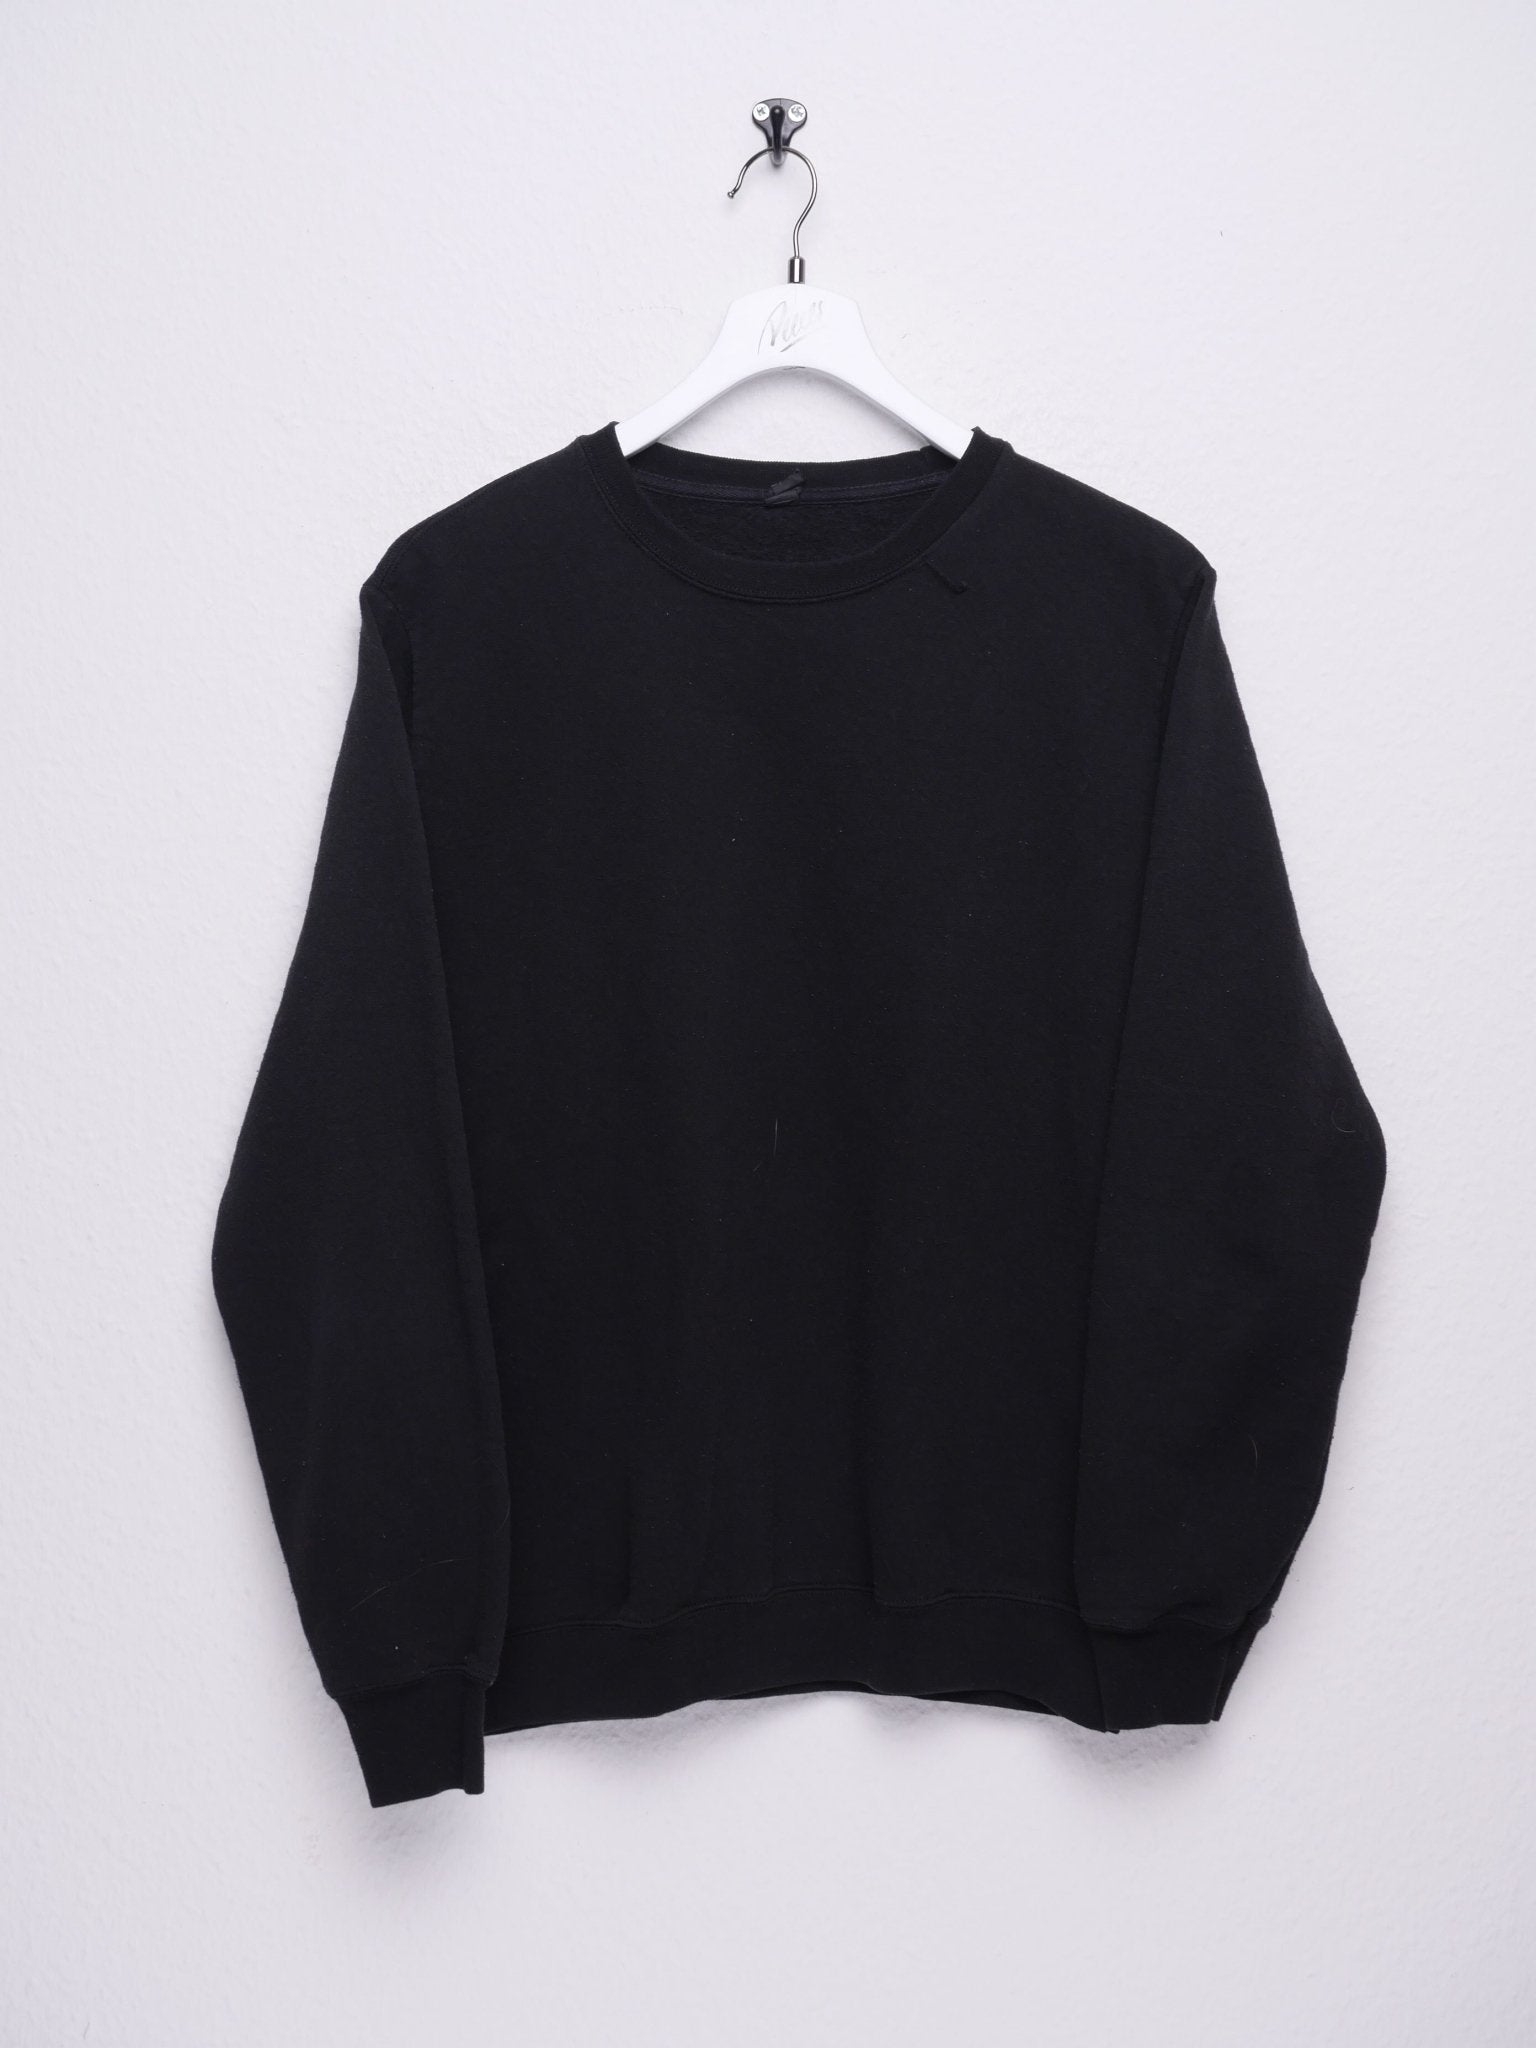 Vintage Basic Black Sweater - Peeces